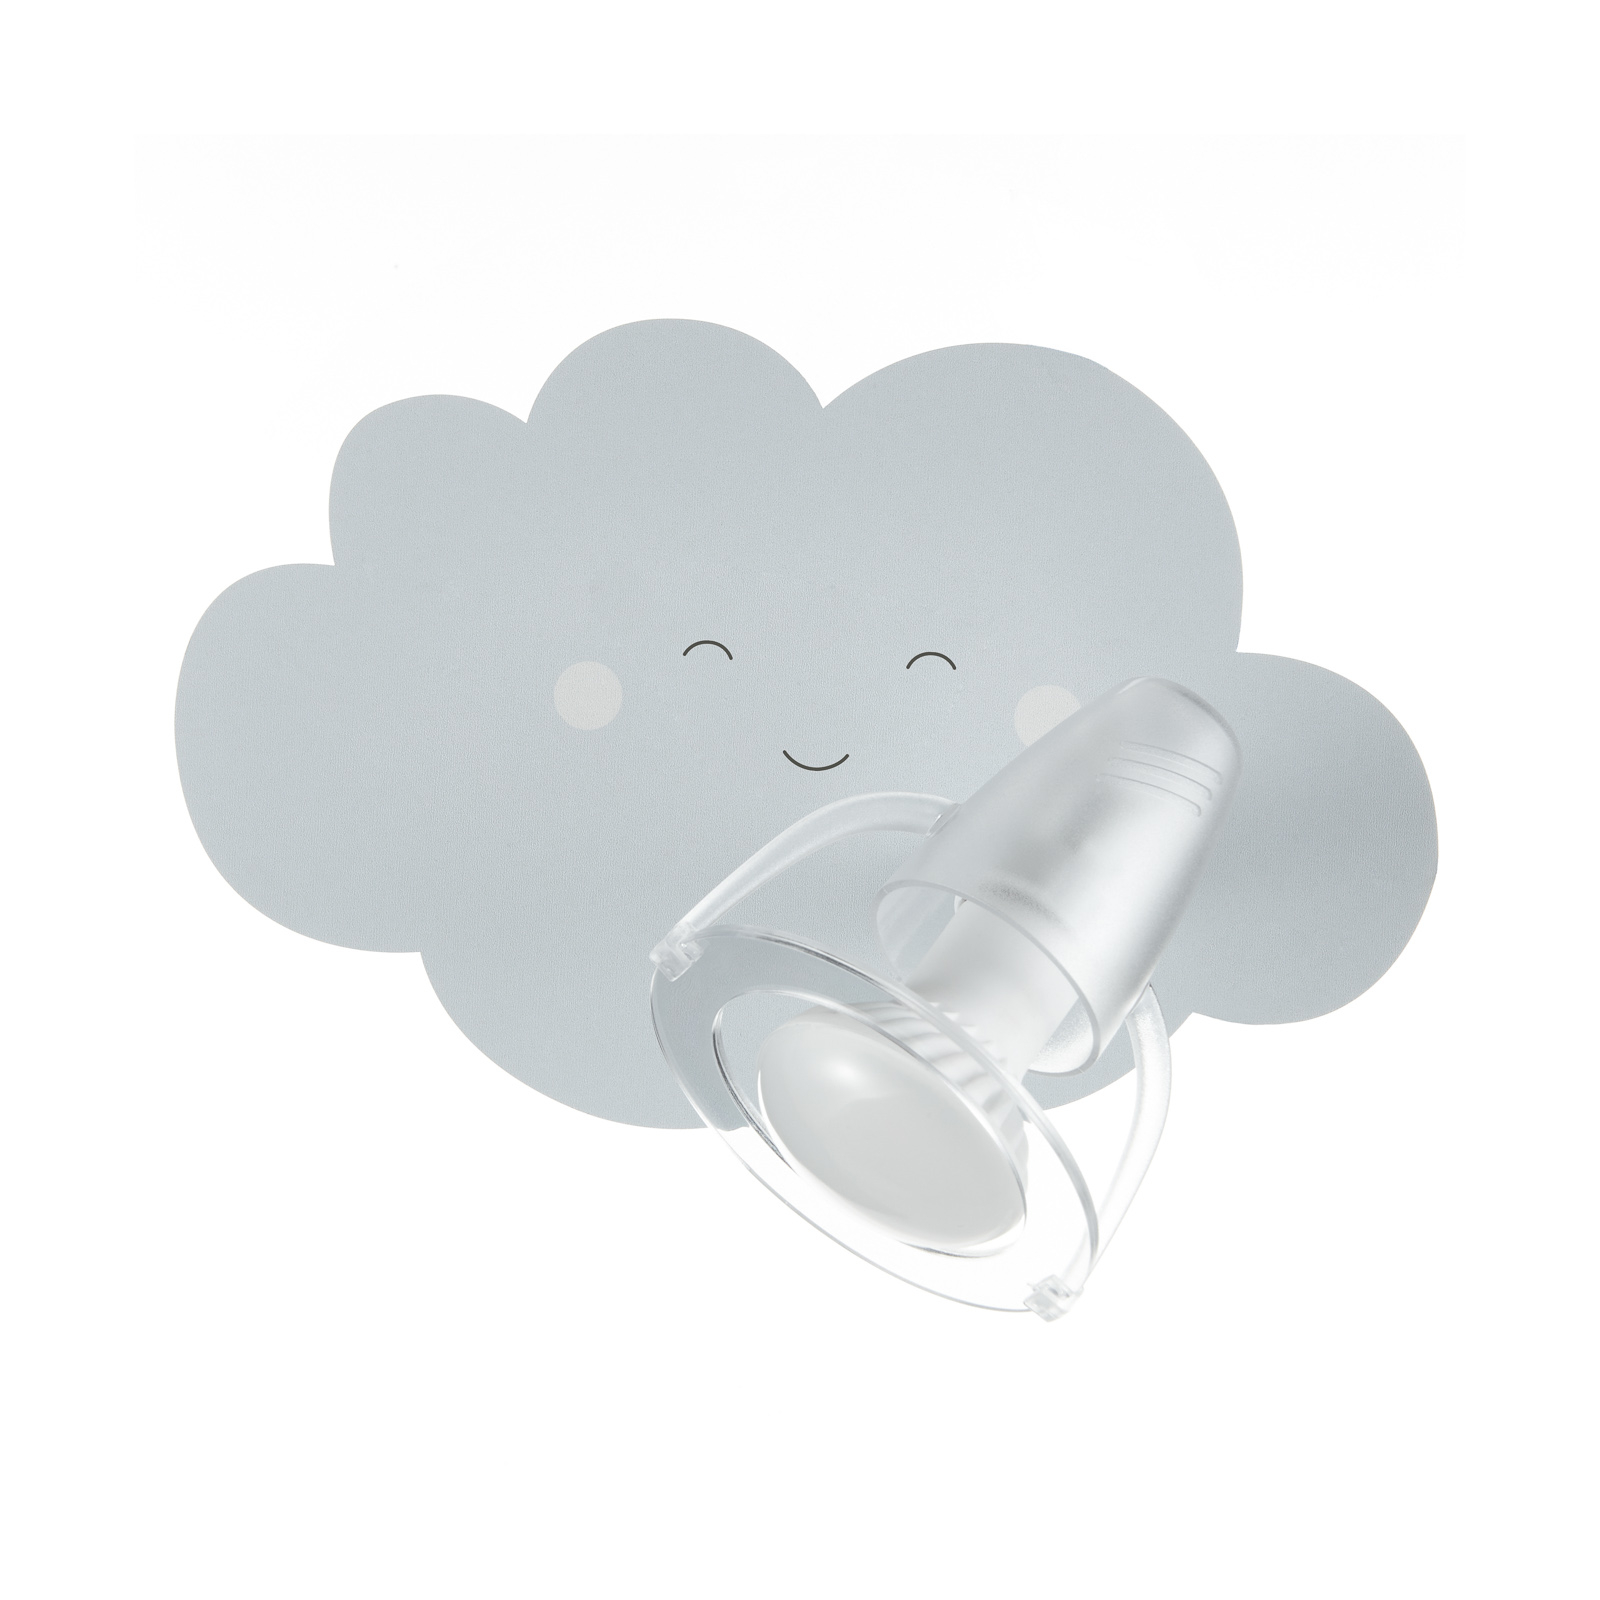 Wandlamp Wolkengezicht in grijs met spot